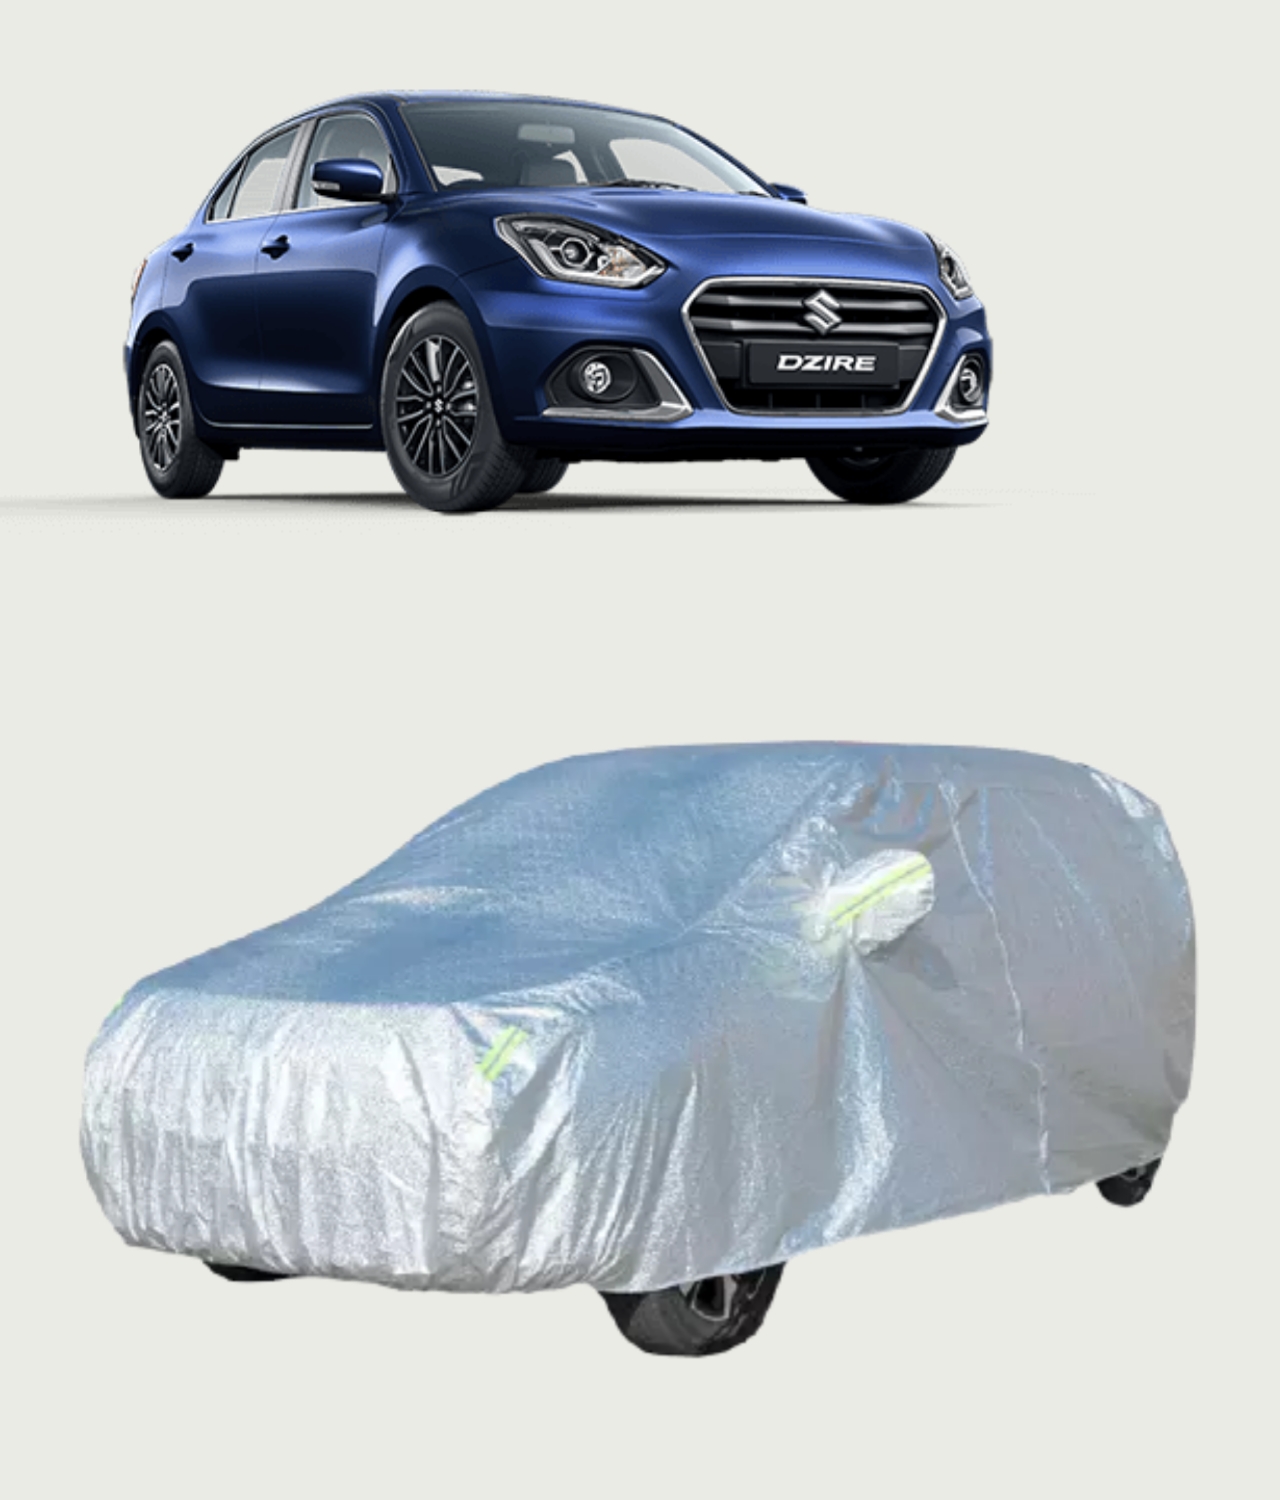 https://nellaitarpaulin.com/wp-content/uploads/2021/06/swift-dzire-waterproof-car-cover.jpg